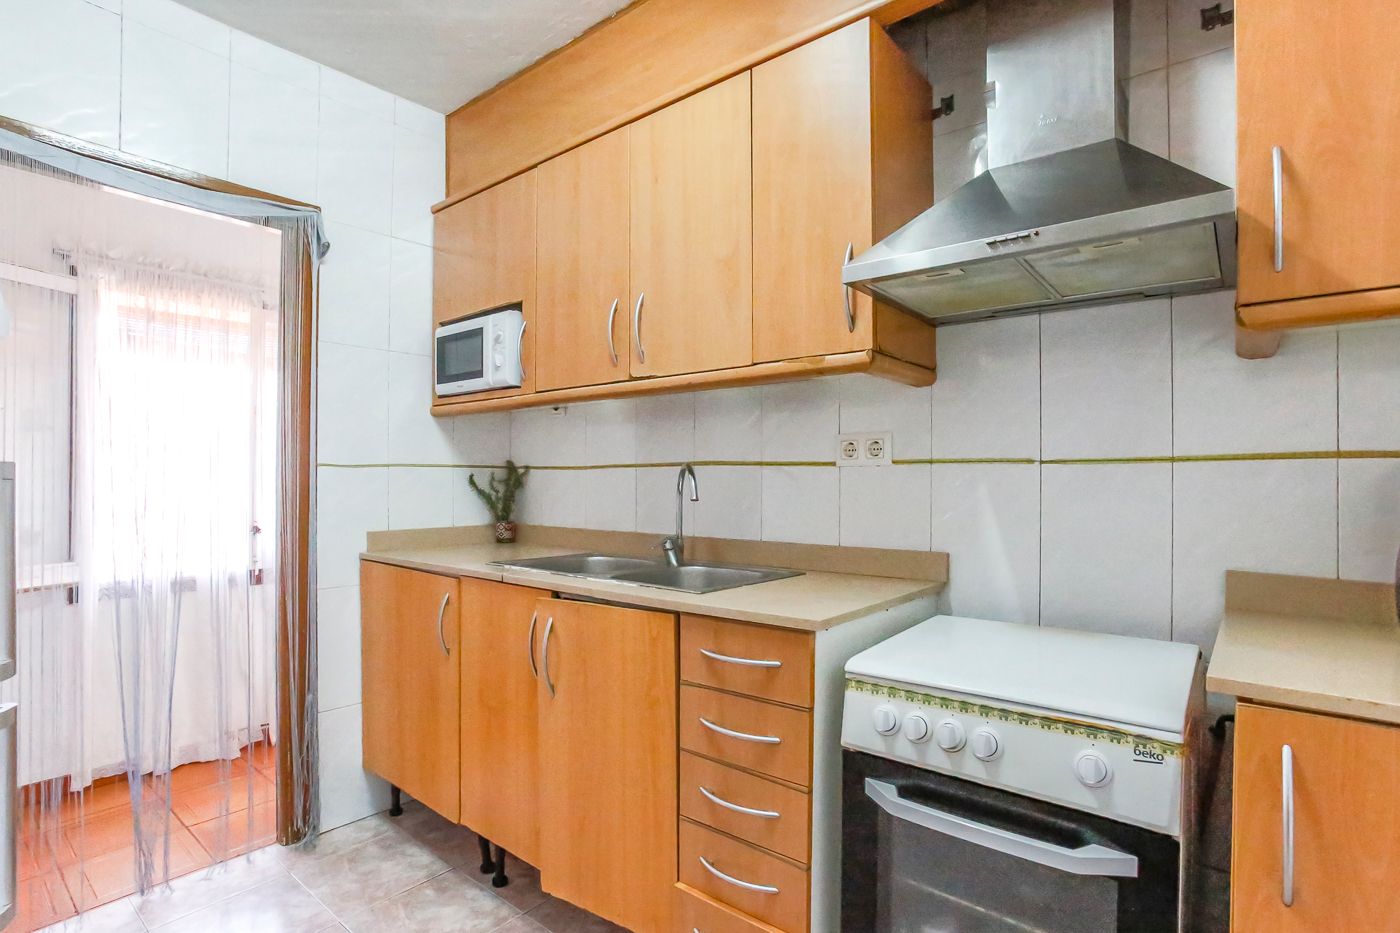 Casa de poble amb divisió horitzontal feta a 3 habitatges a Gualta